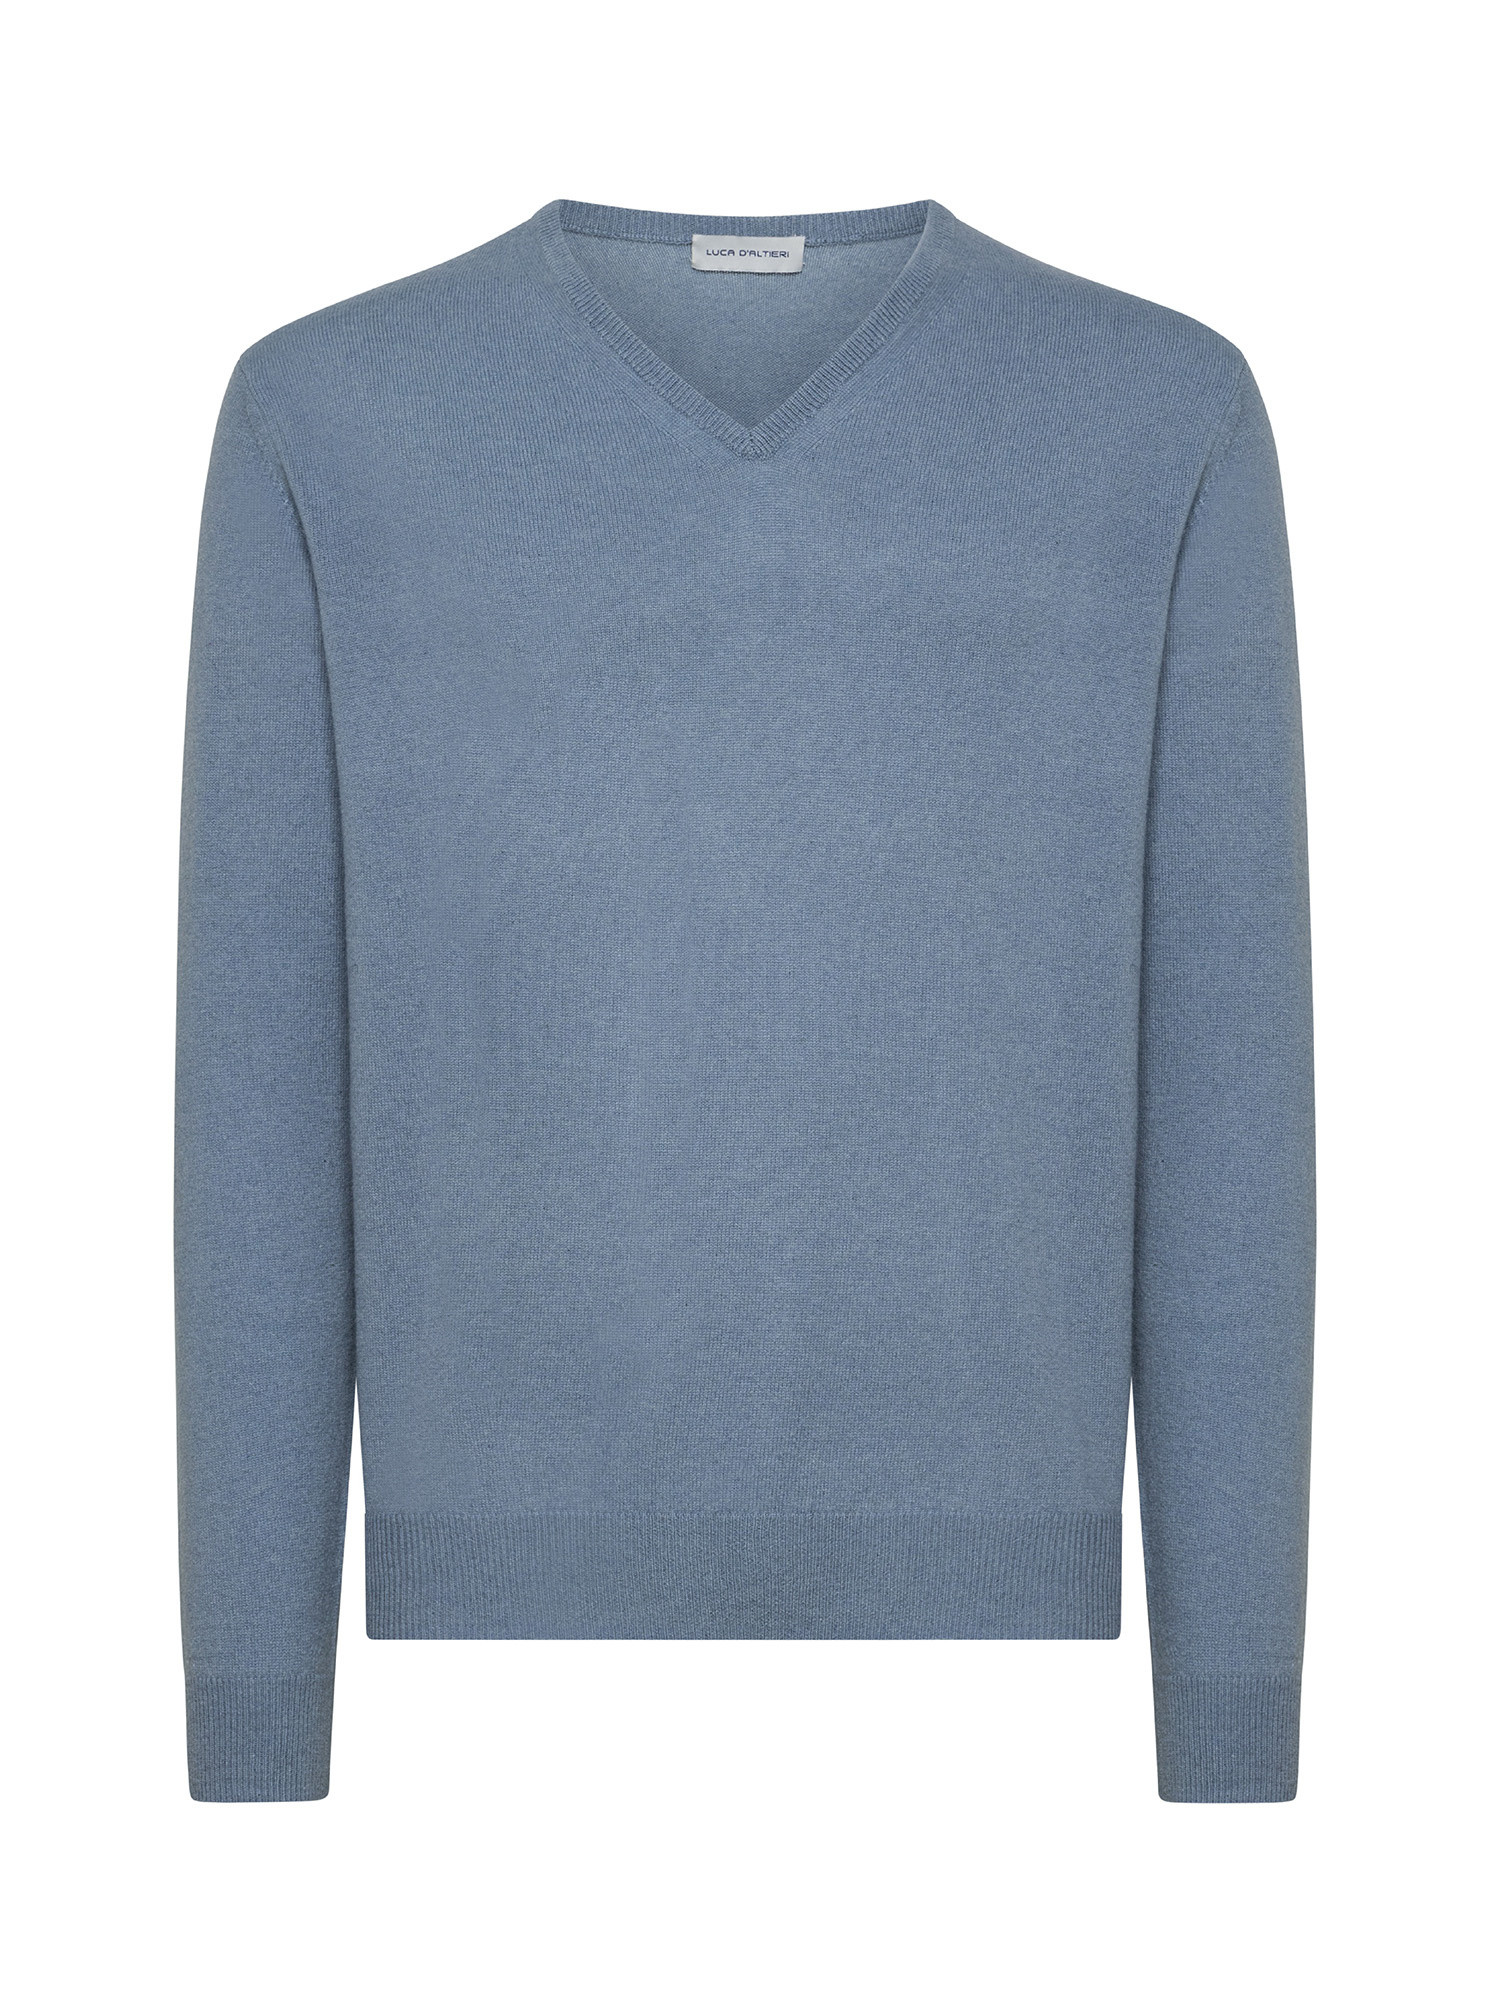 Пуловер с V-образным вырезом из чистого кашемира Luca D'Altieri, голубой пуловер с v образным вырезом из рифленого трикотажа xl бежевый